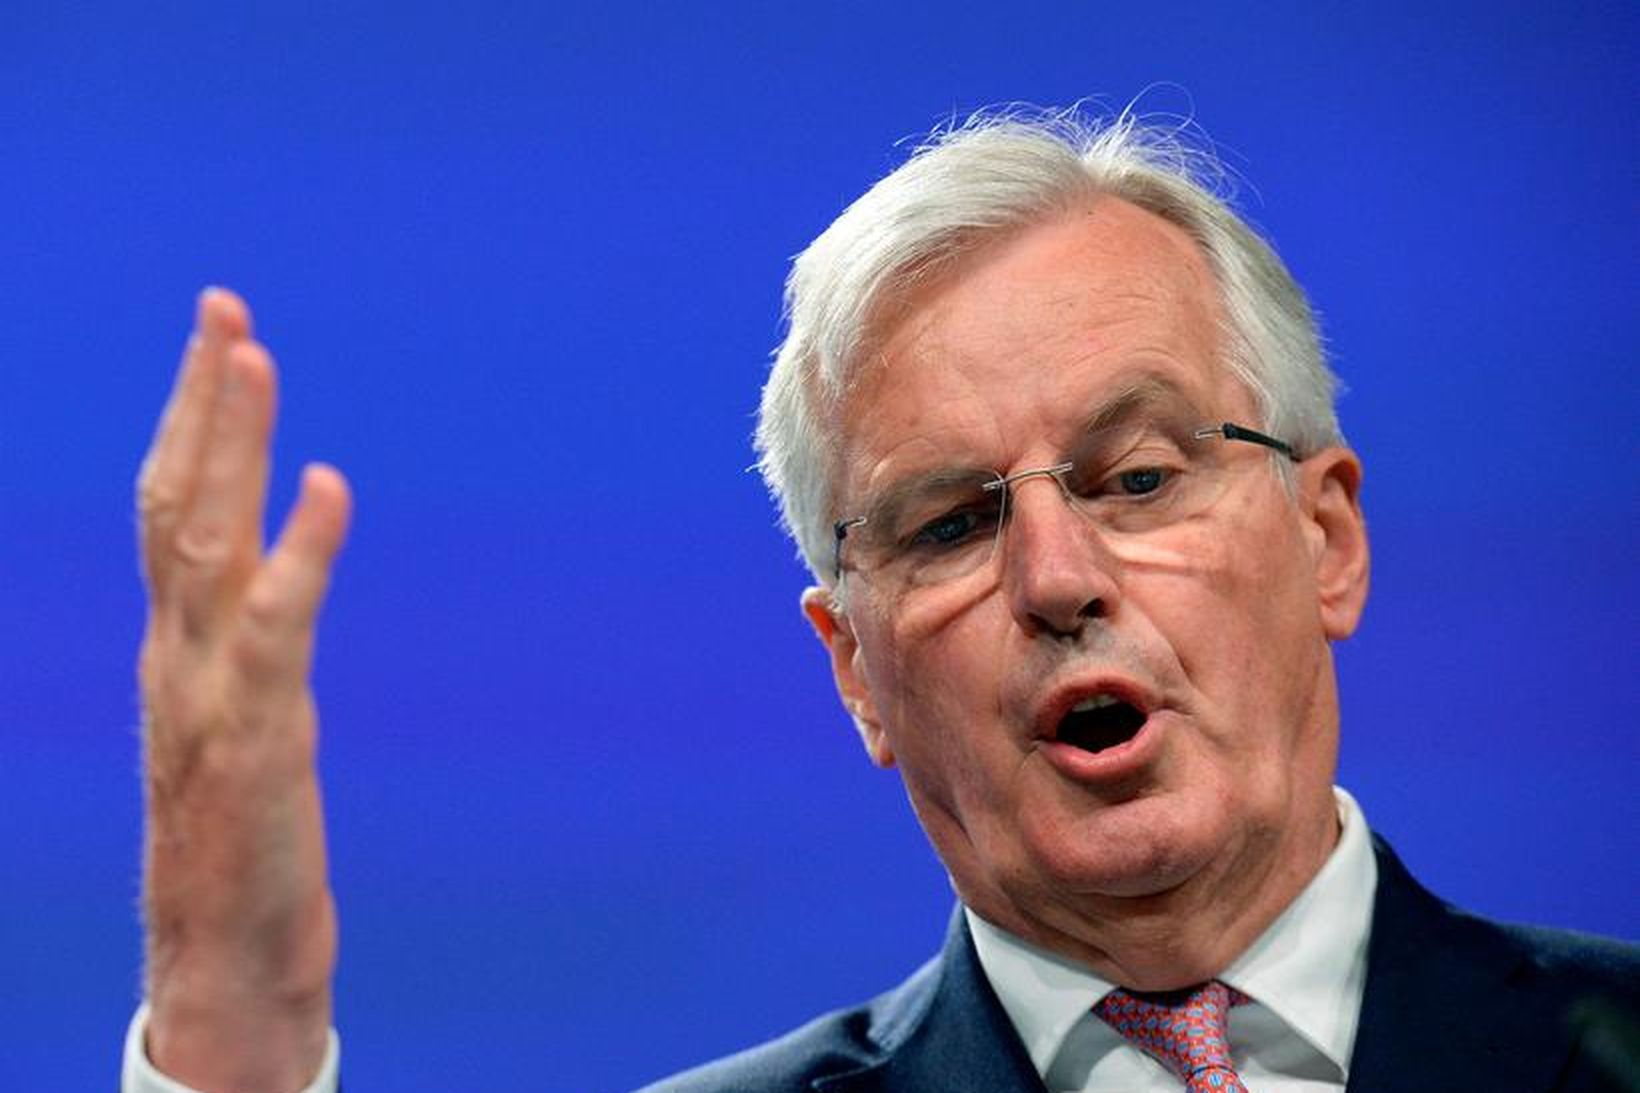 Michel Barnier, aðalsamningamaður ESB vegna útgöngu Bretlands úr sambandinu.